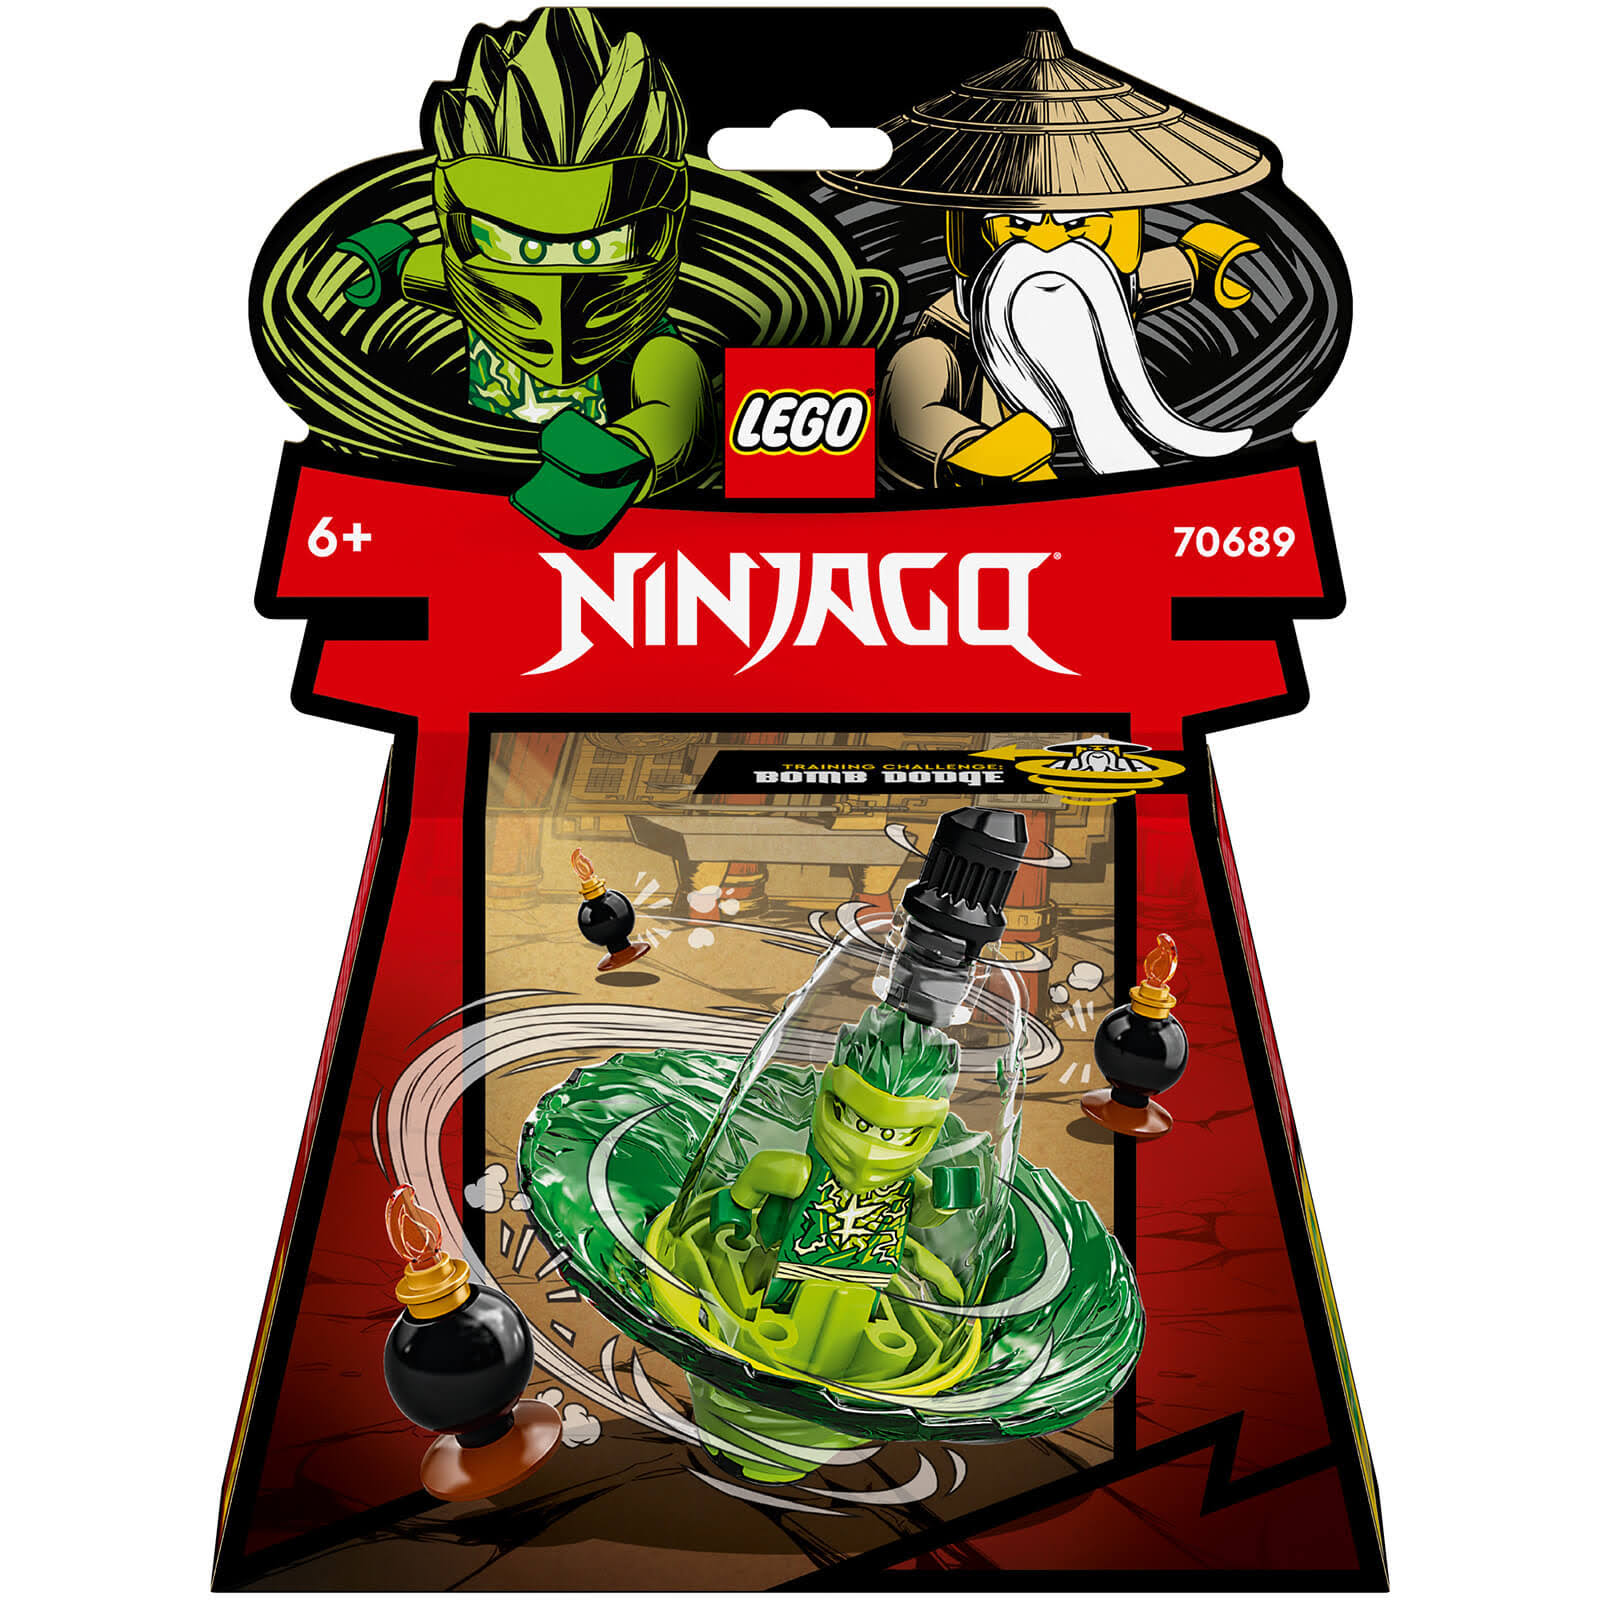 Lego 70689 Ninjago Lloyd's Spinjitzu Ninja Training